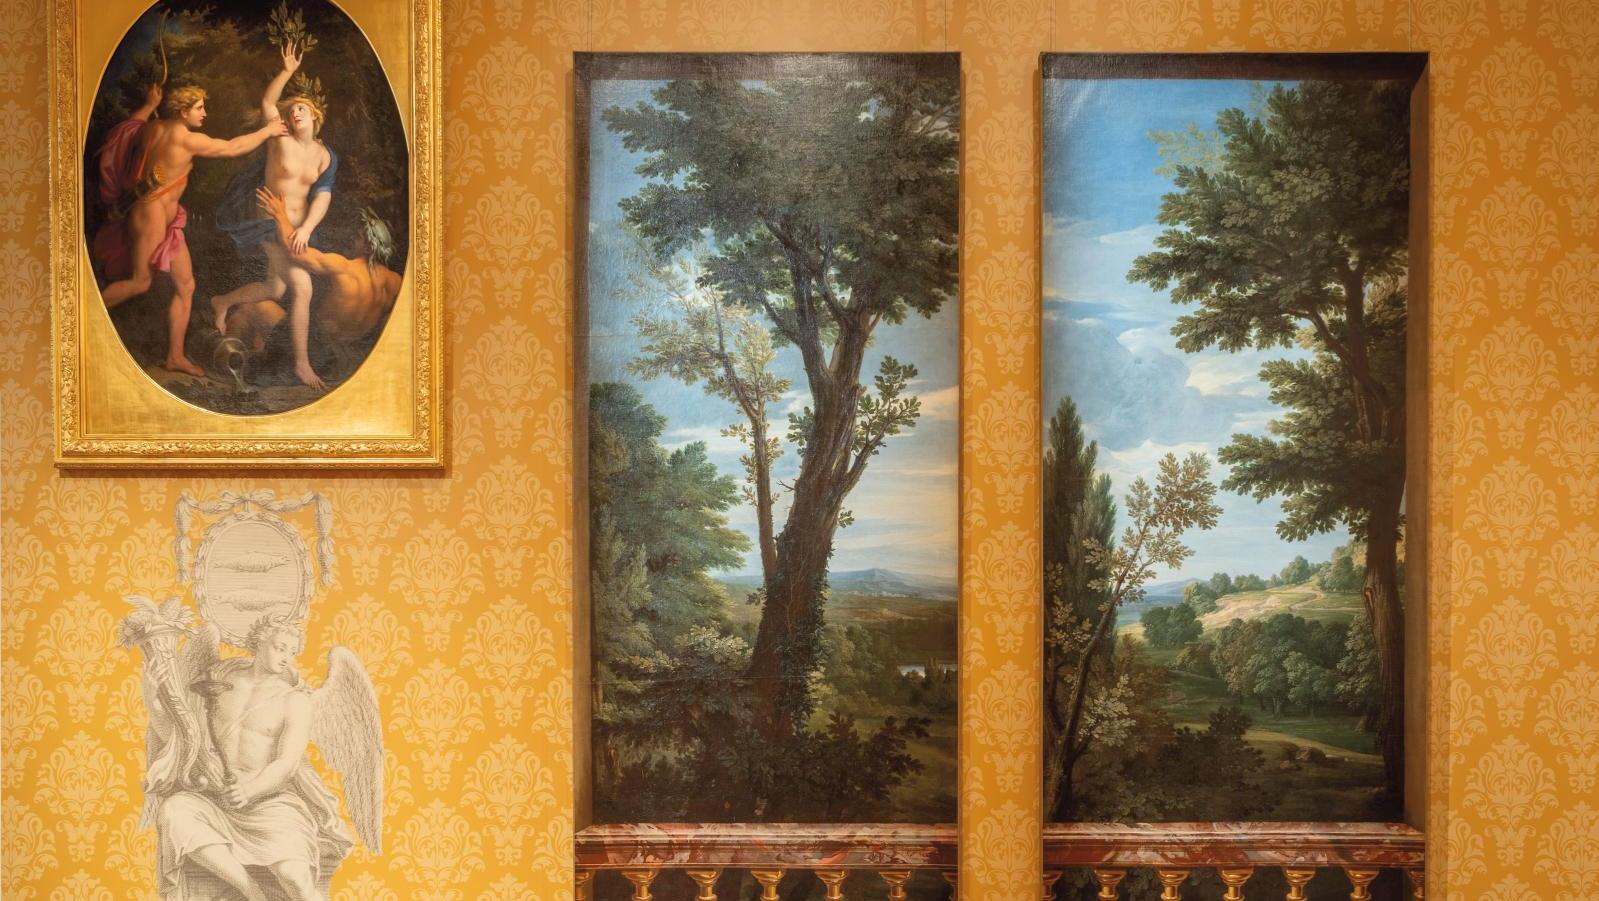 Près d'un piédestal royal en brèche grise, Apollon et Daphné et Paysages avec portique... Une nouvelle galerie d’histoire pour les 400 ans de Versailles